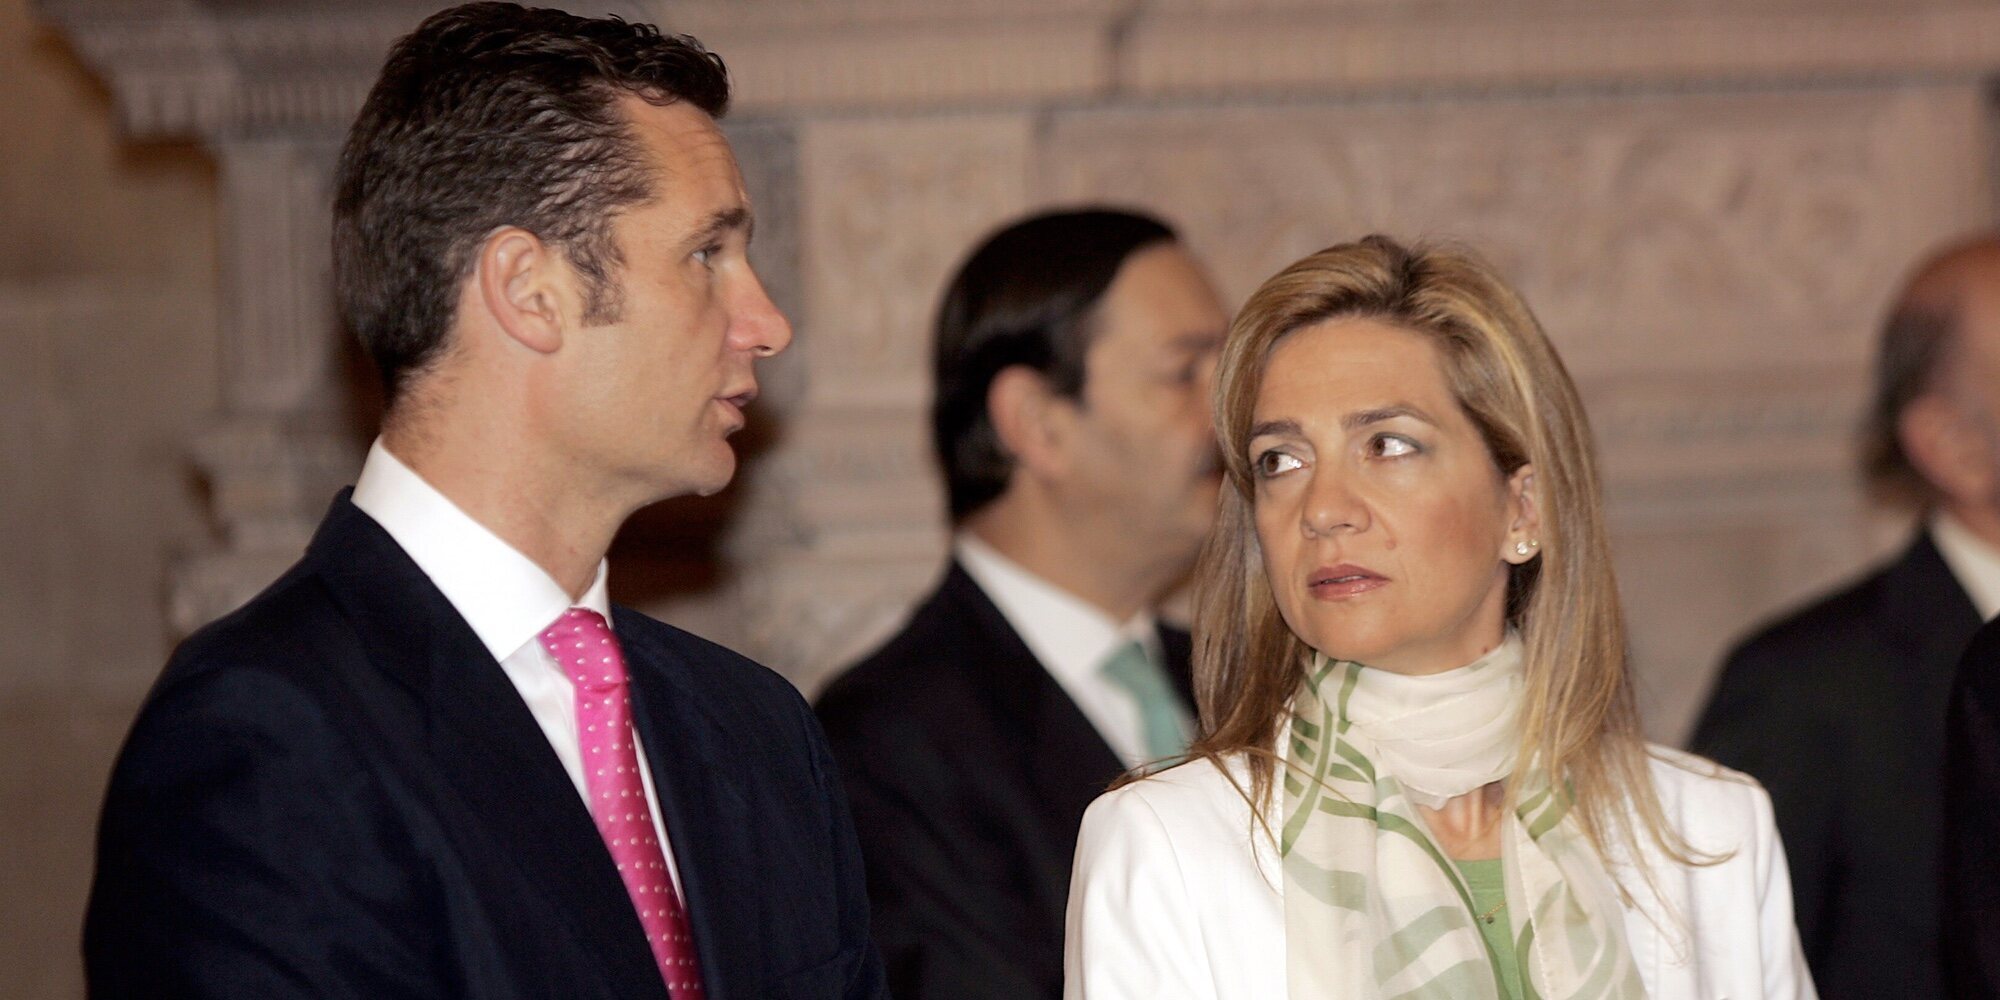 La cumbre de la Infanta Cristina e Iñaki Urdangarin previa al comunicado de separación y el gesto de Miguel Urdangarin